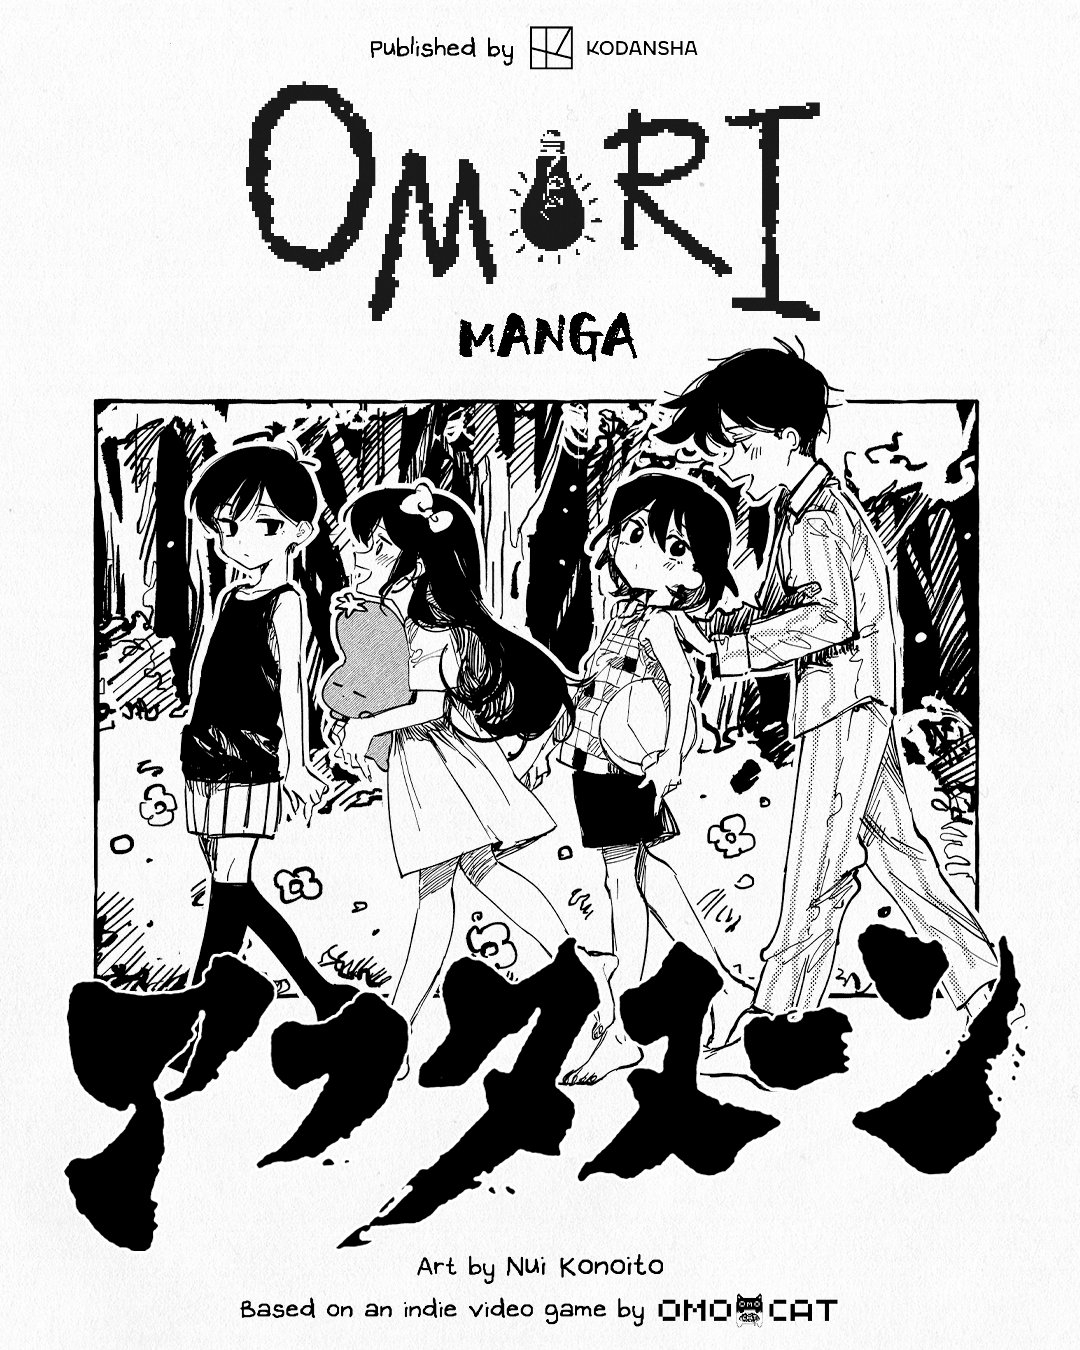 Манга по игре OMORI начнет выходить в июне. Перевод на английский уже в работе